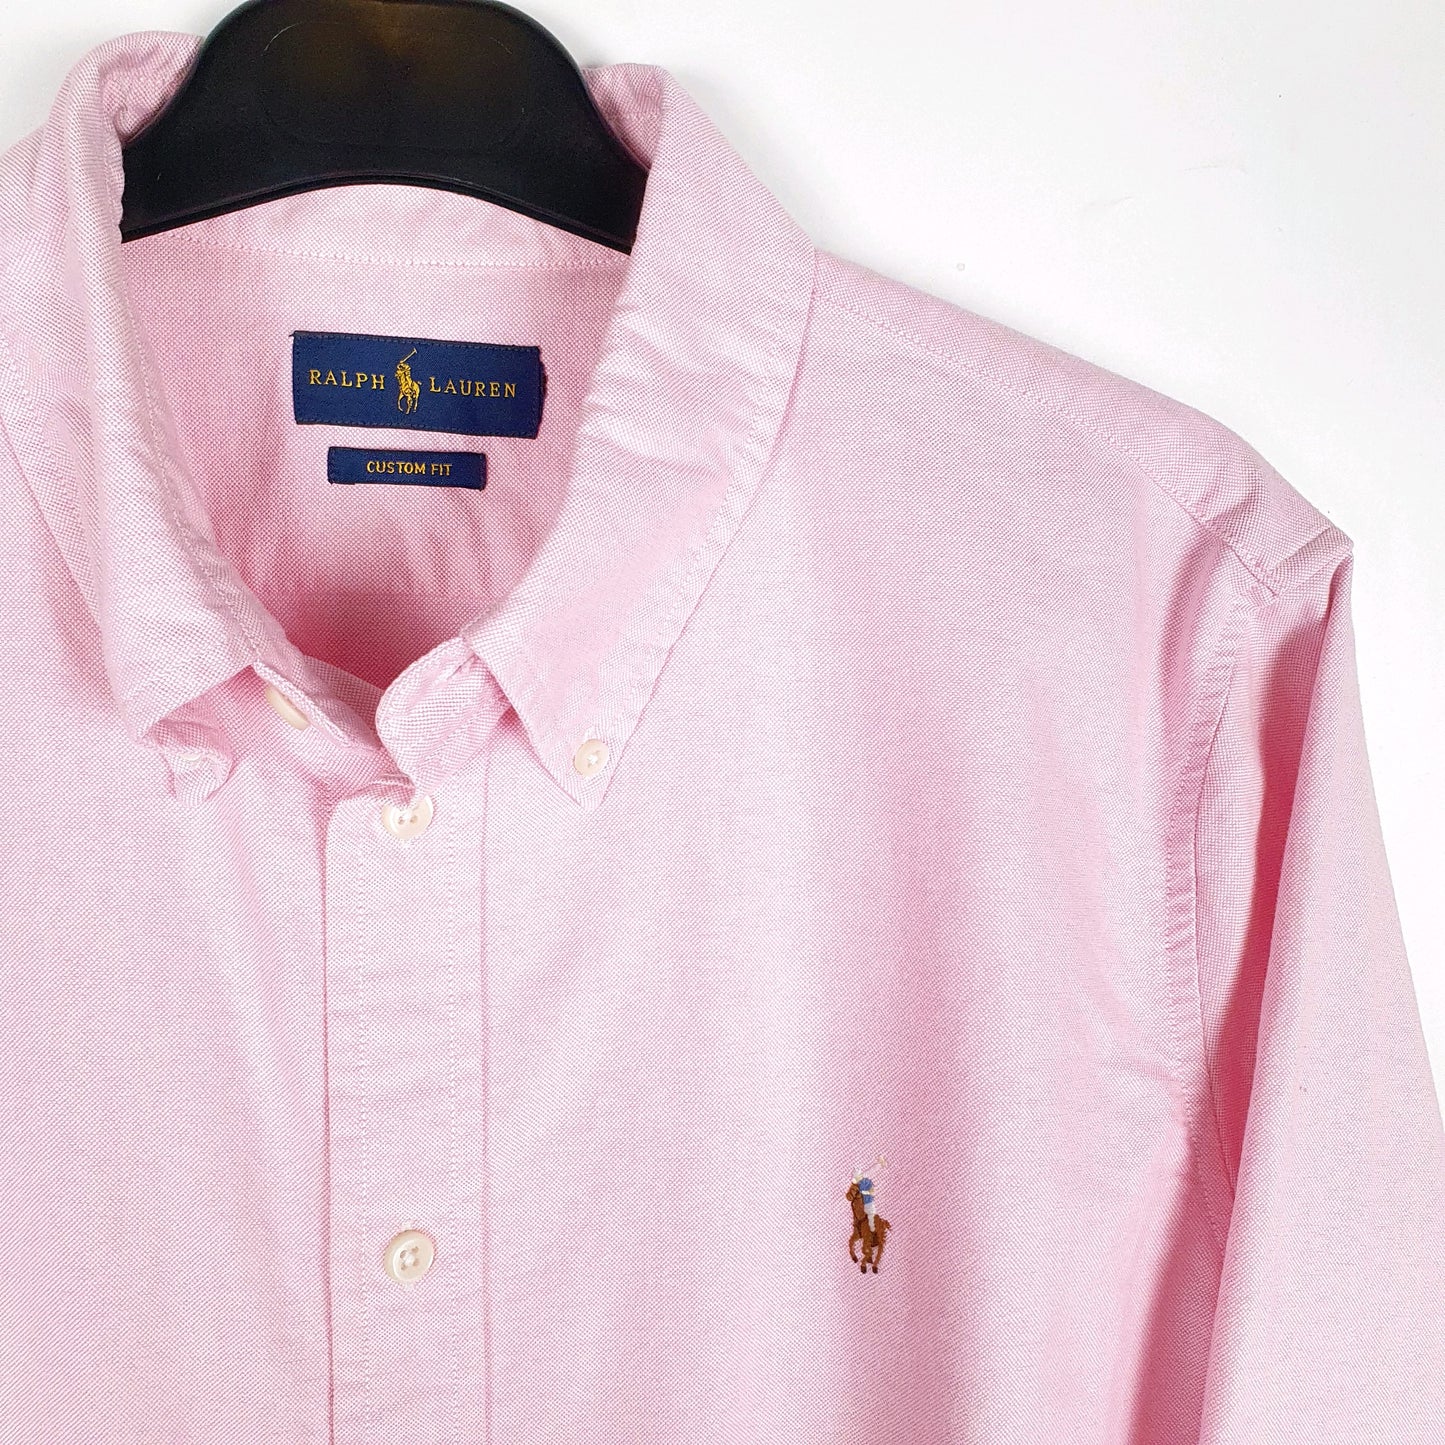 Polo Ralph Lauren Long Sleeve Custom Fit Shirt